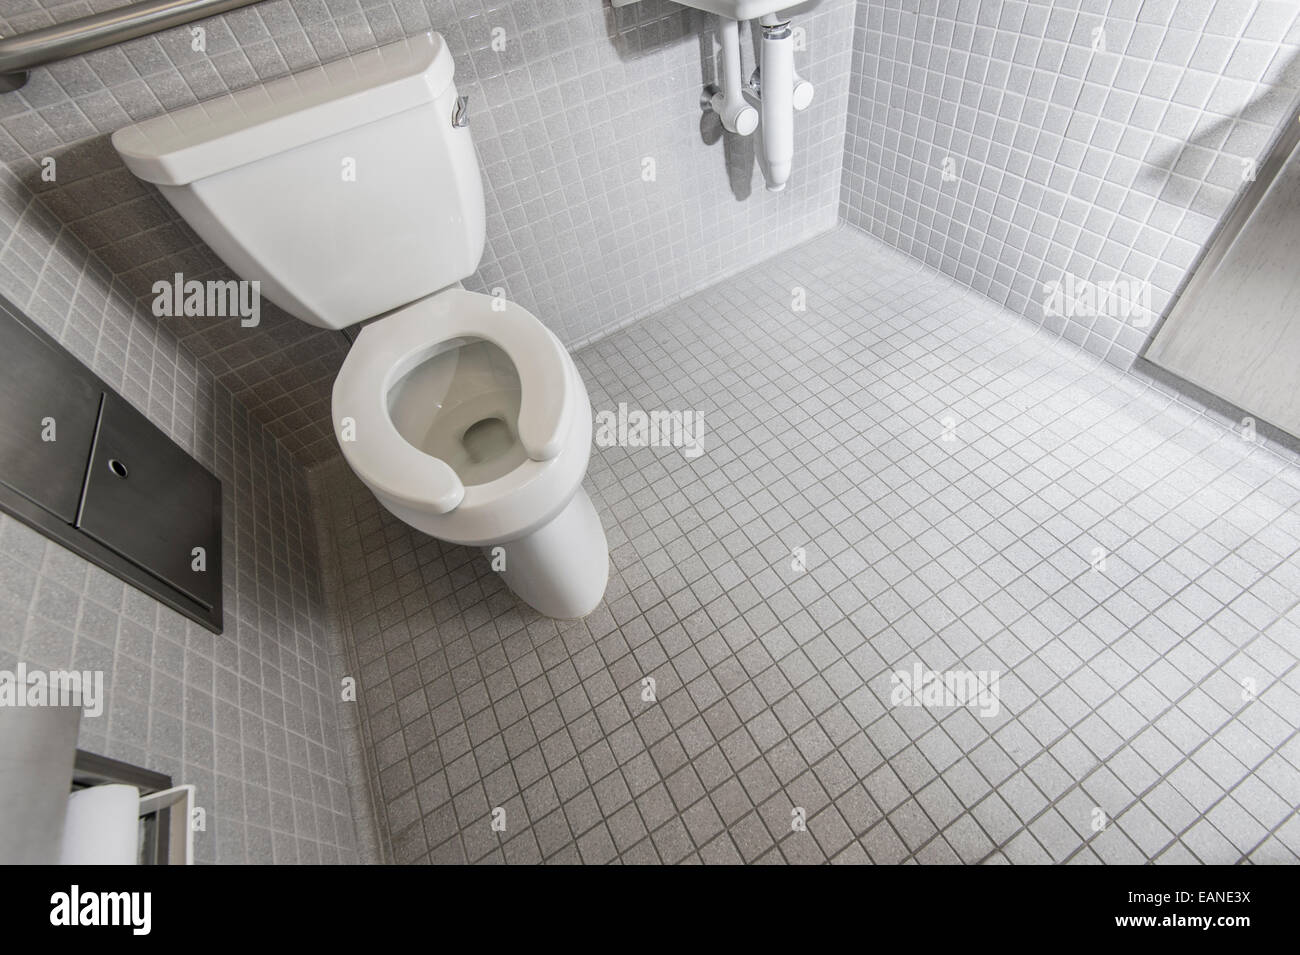 Toilettes dans salle de bains publique Banque D'Images